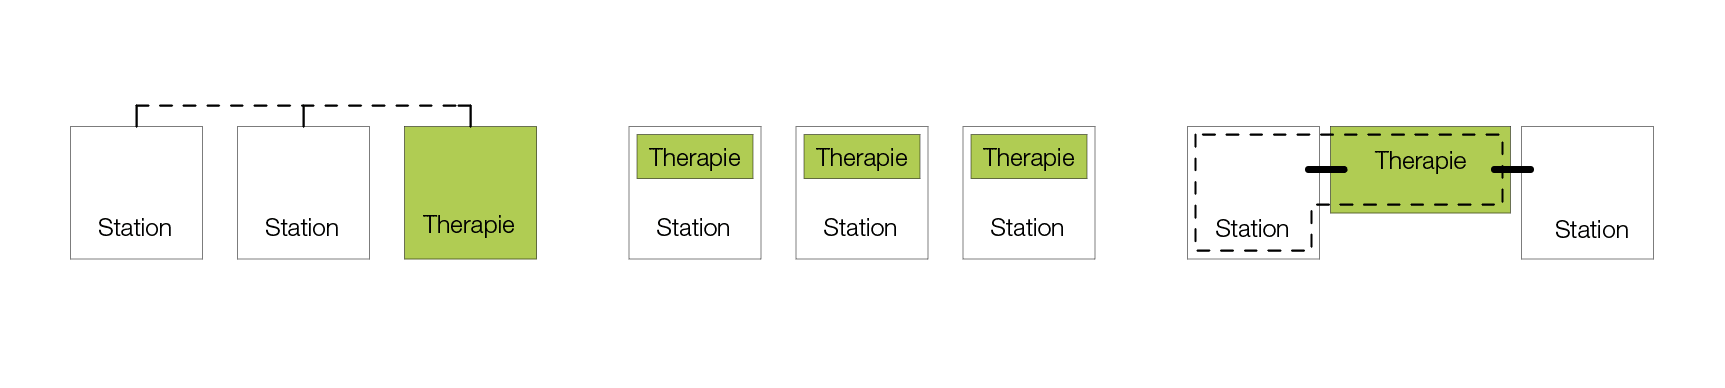 Anordnung der Therapiebereiche